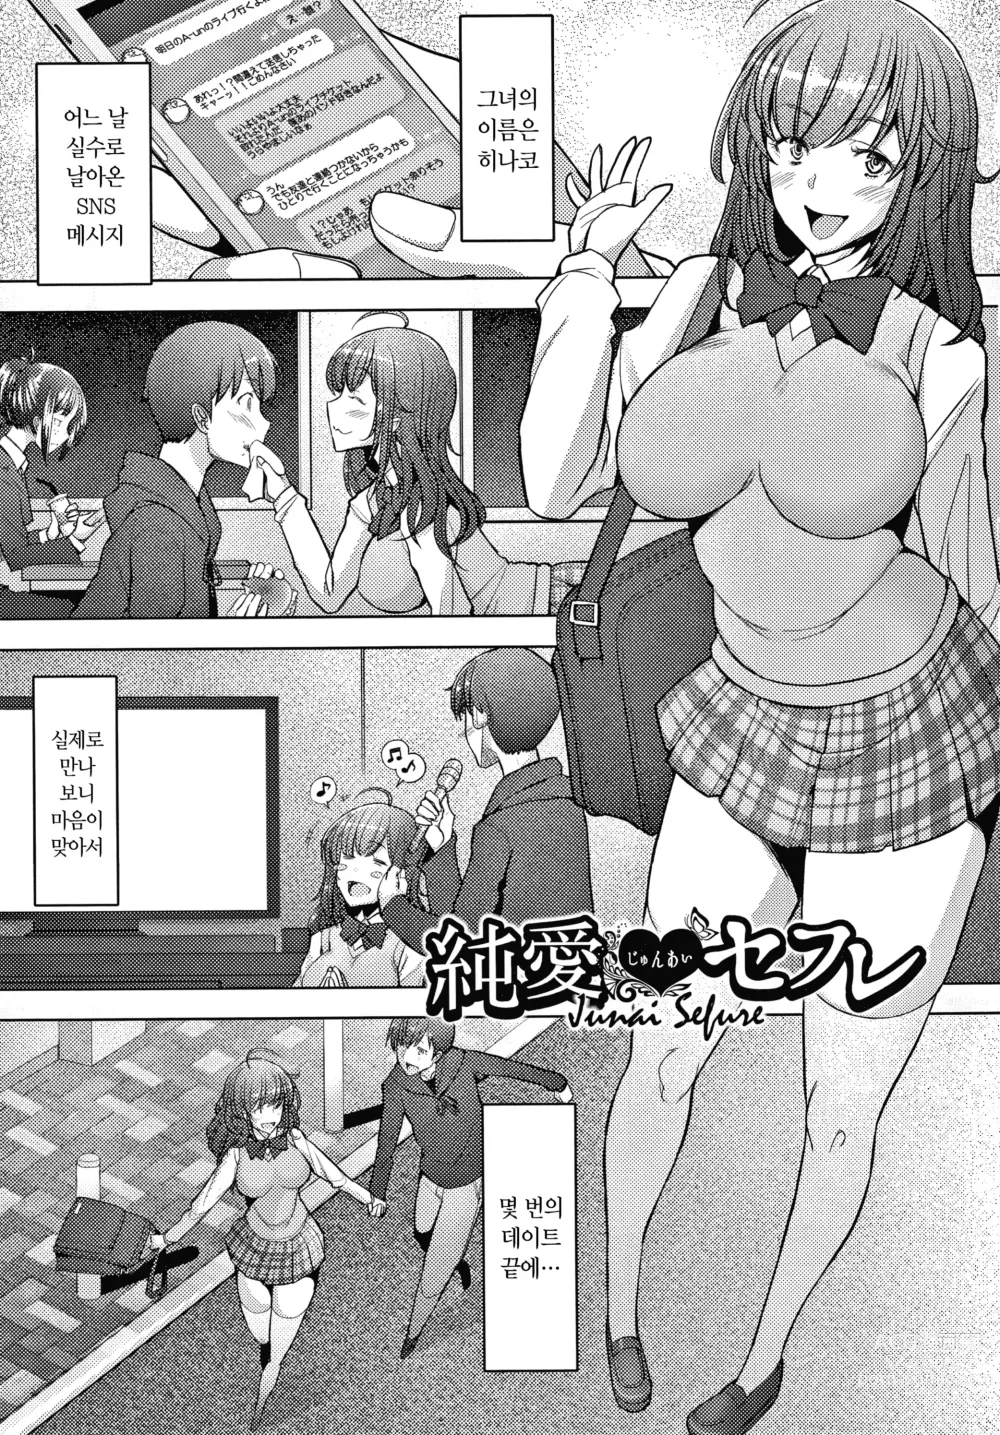 Page 30 of manga 유부녀도 사랑하고 싶어 ~노콘 수정으로 임신하고 싶은 유부녀들~